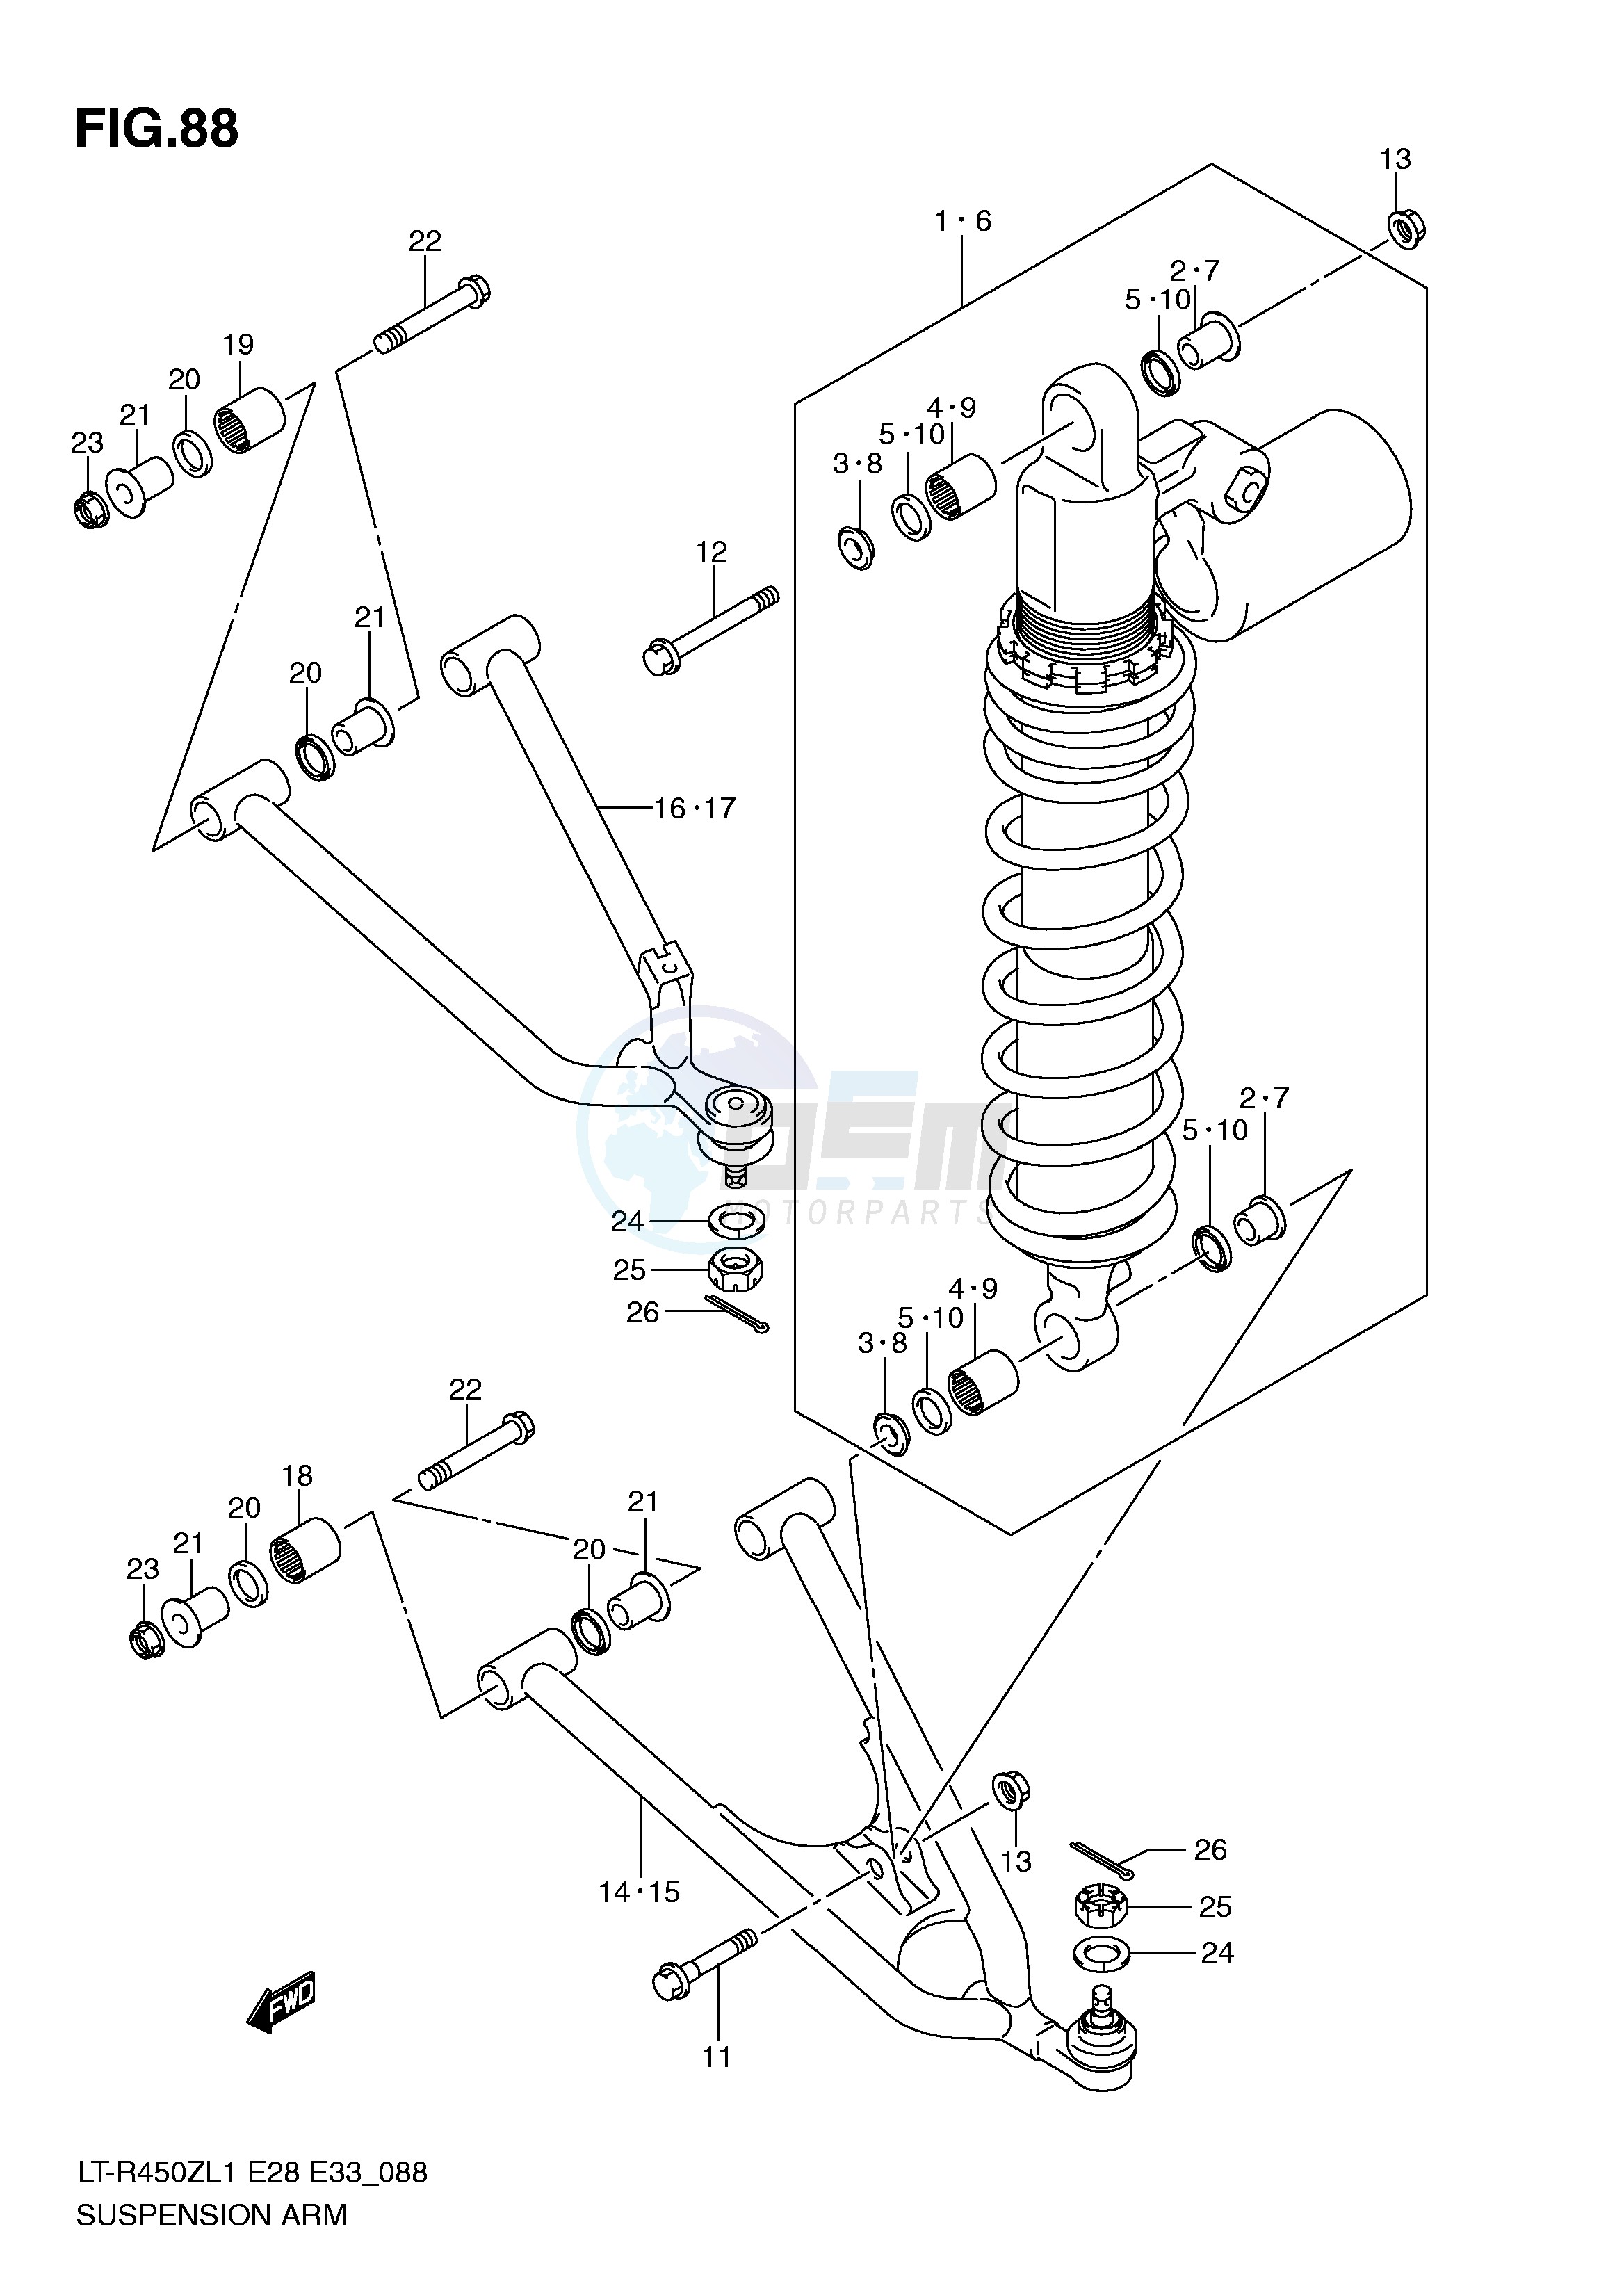 SUSPENSION ARM (LT-R450ZL1 E28) blueprint